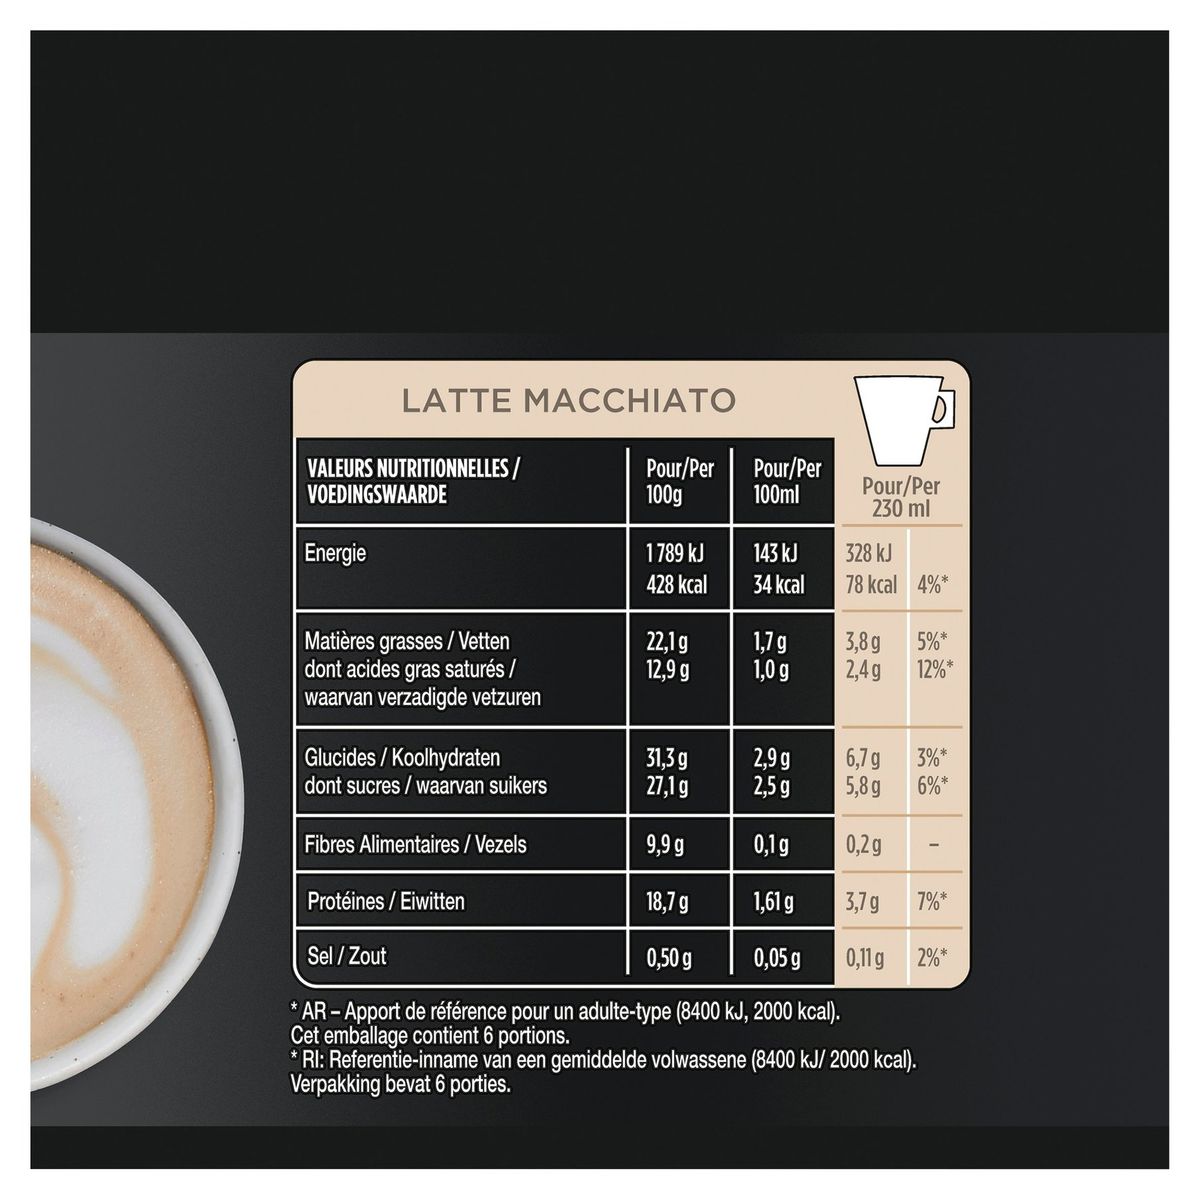 Koffie STARBUCKS Latte Macchiato by NESCAFÉ DOLCE GUSTO 12 Capsules